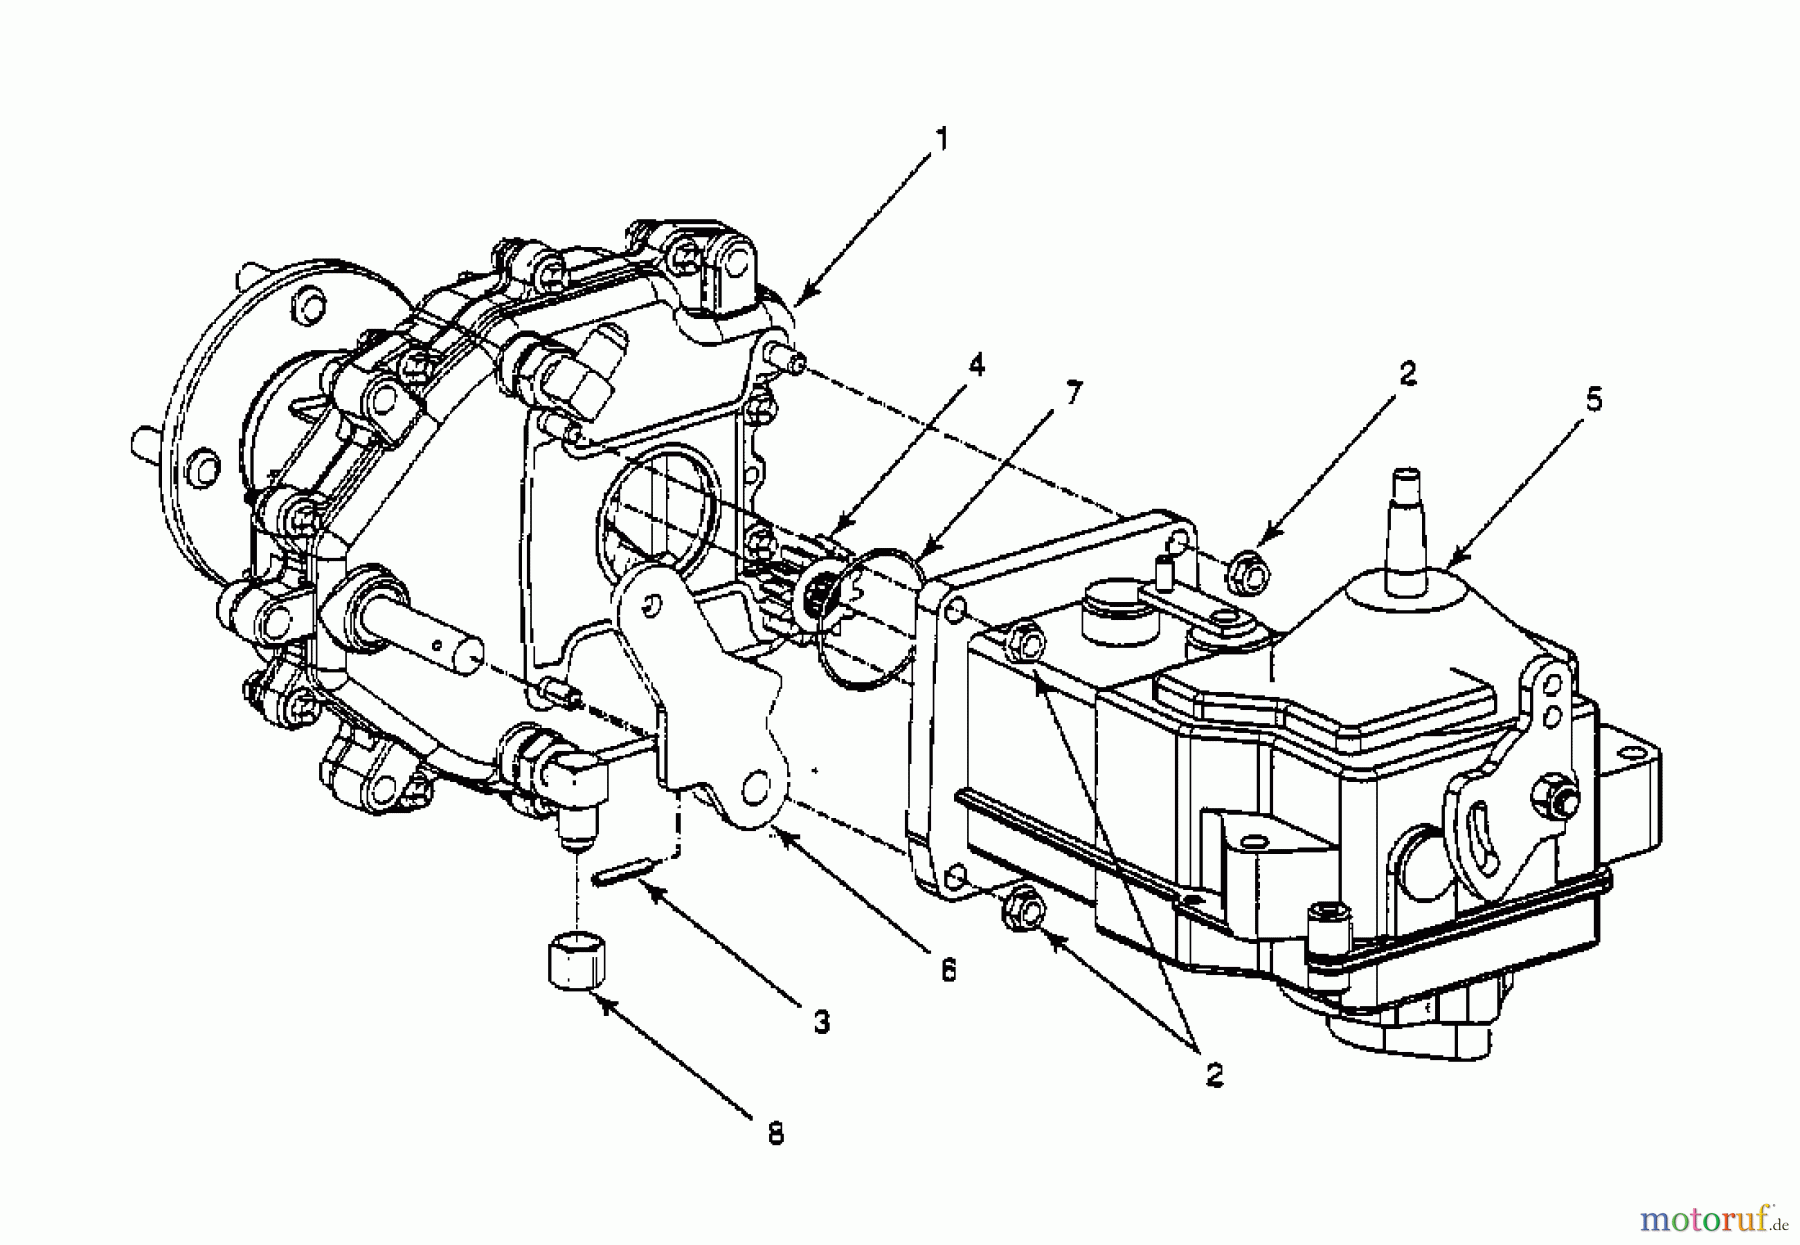  White Zero Turn 48-Z 53AC235M679  (1998) Gearbox, Hydrostatic gearbox